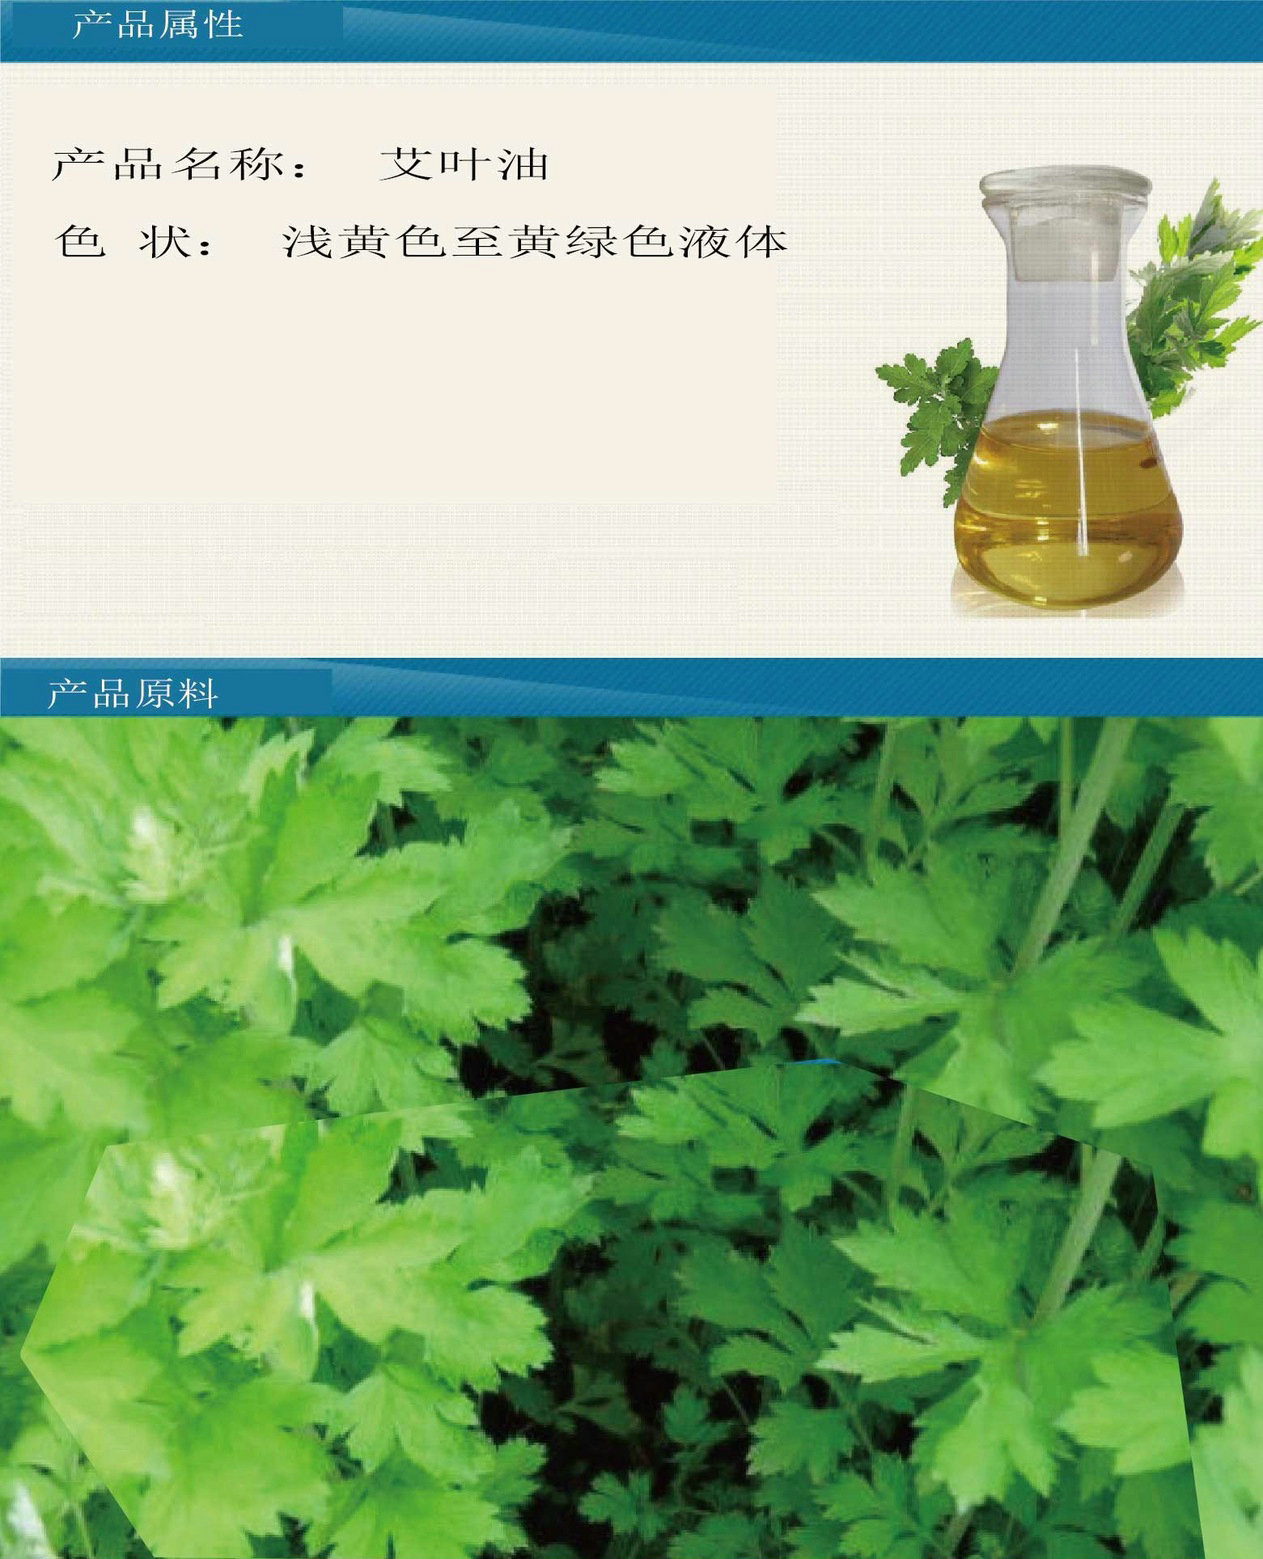 厂家直销 艾叶油 艾炙原料 艾蒿精油  日化原料示例图3